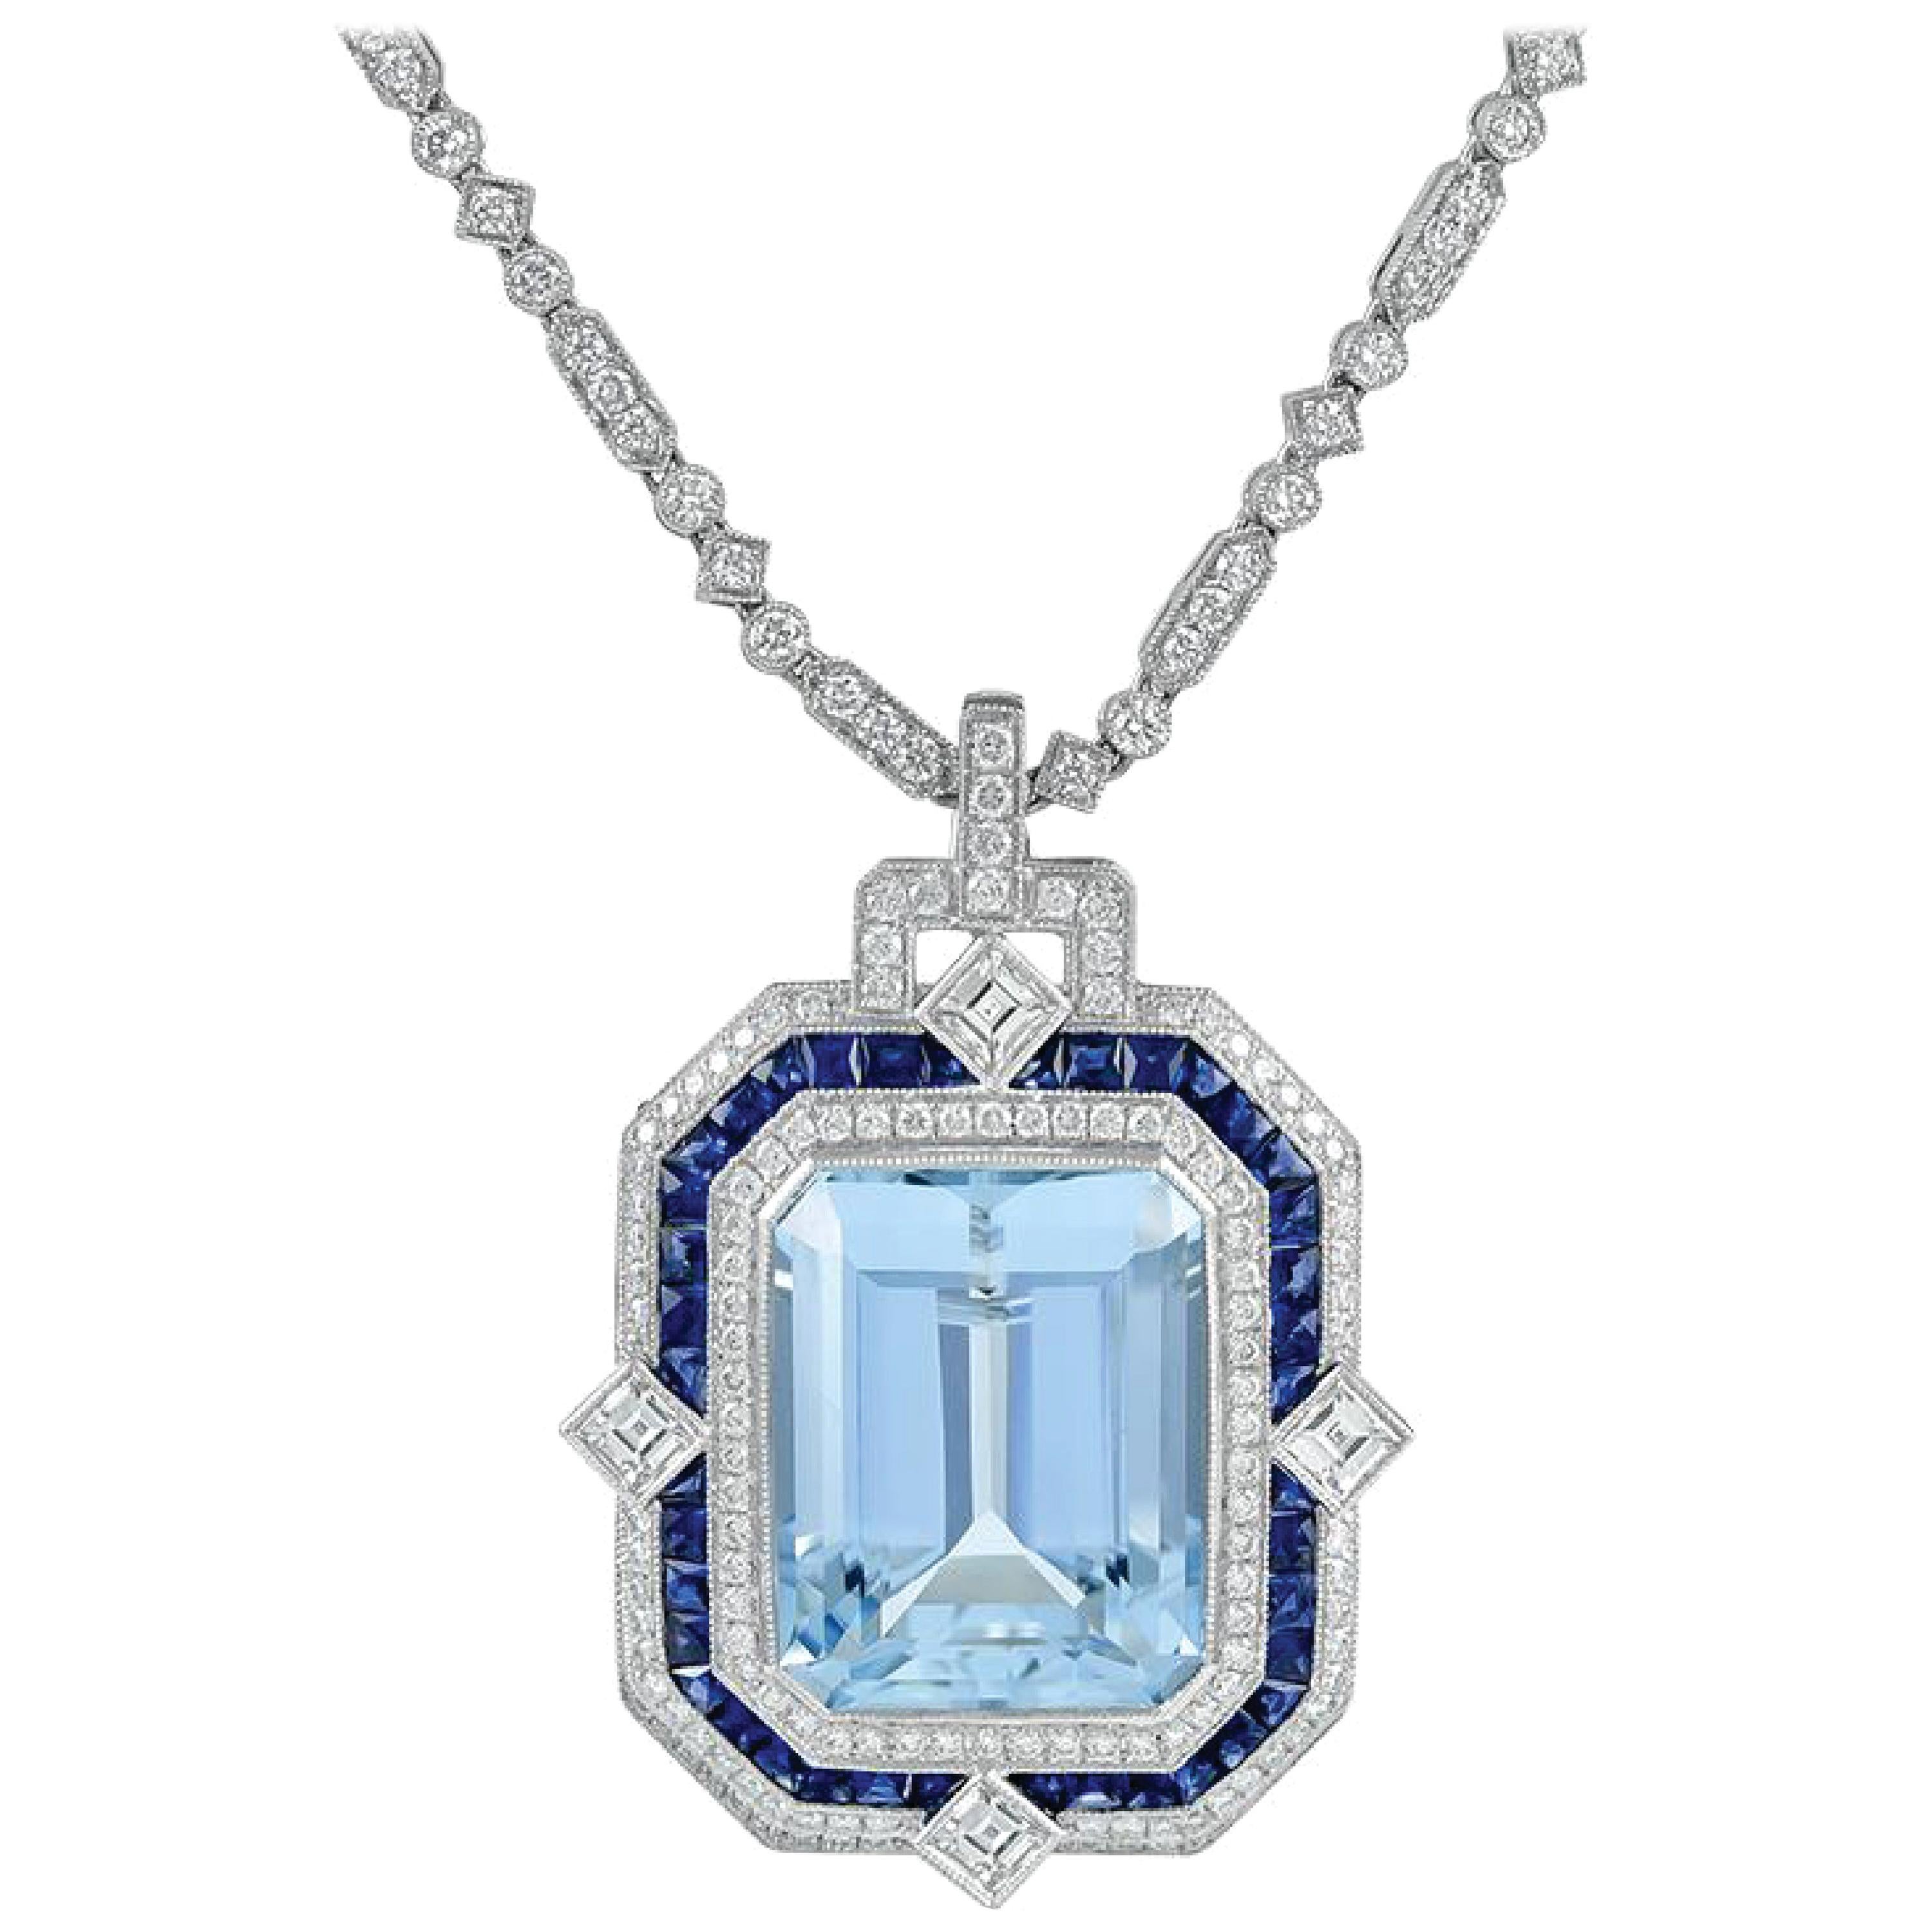 Beautiful Platinum Aquamarine Pendant Accented with Sapphires and Diamonds